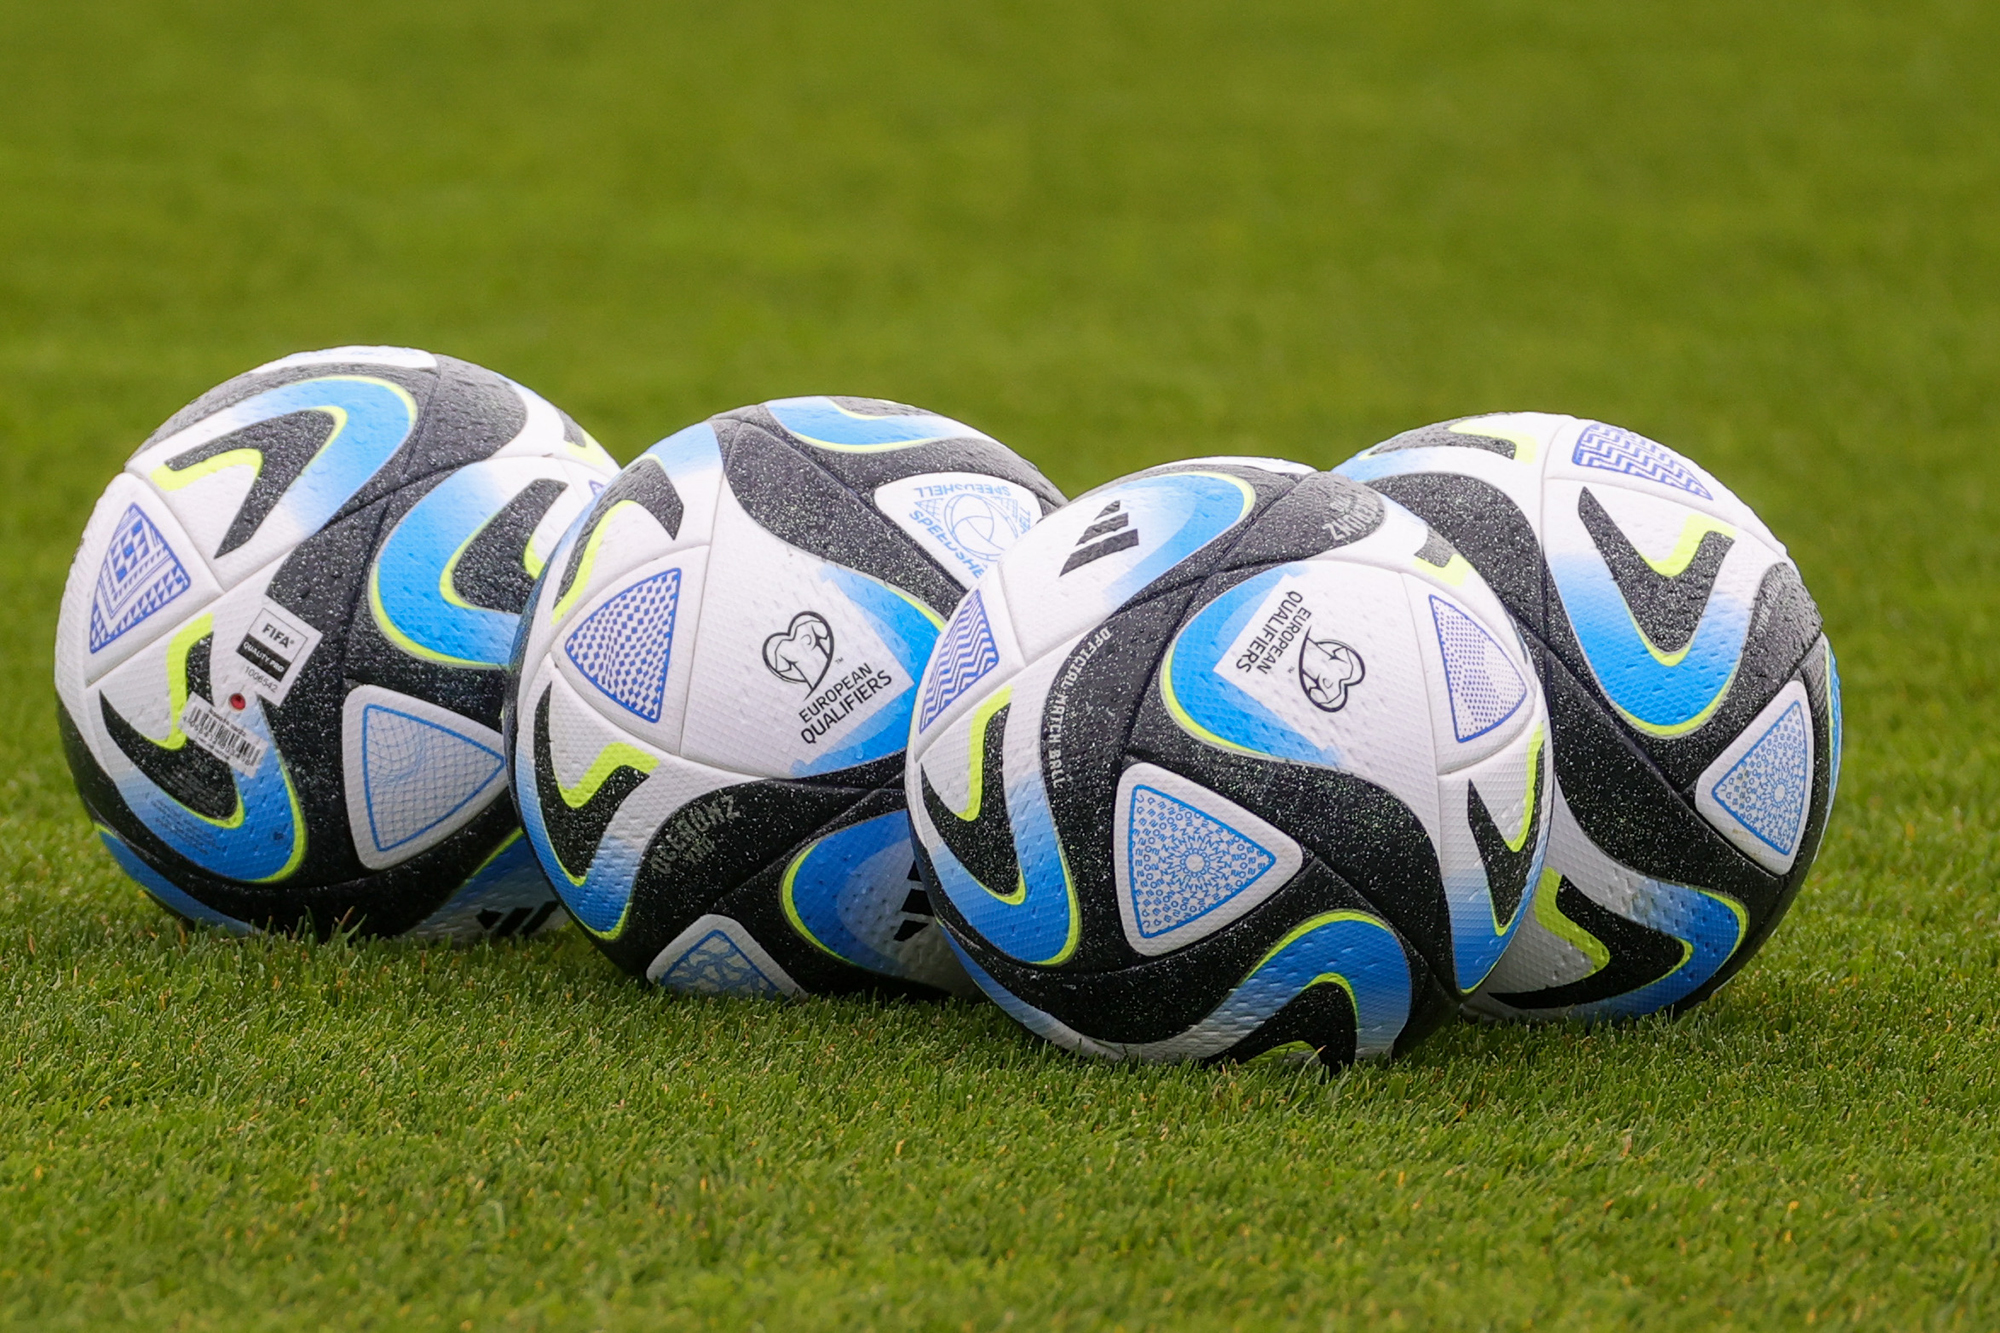 Die offiziellen Bälle für die Qualifikationsspiele zur Fußball-EM (Bild: Virginie Lefour/Belga)